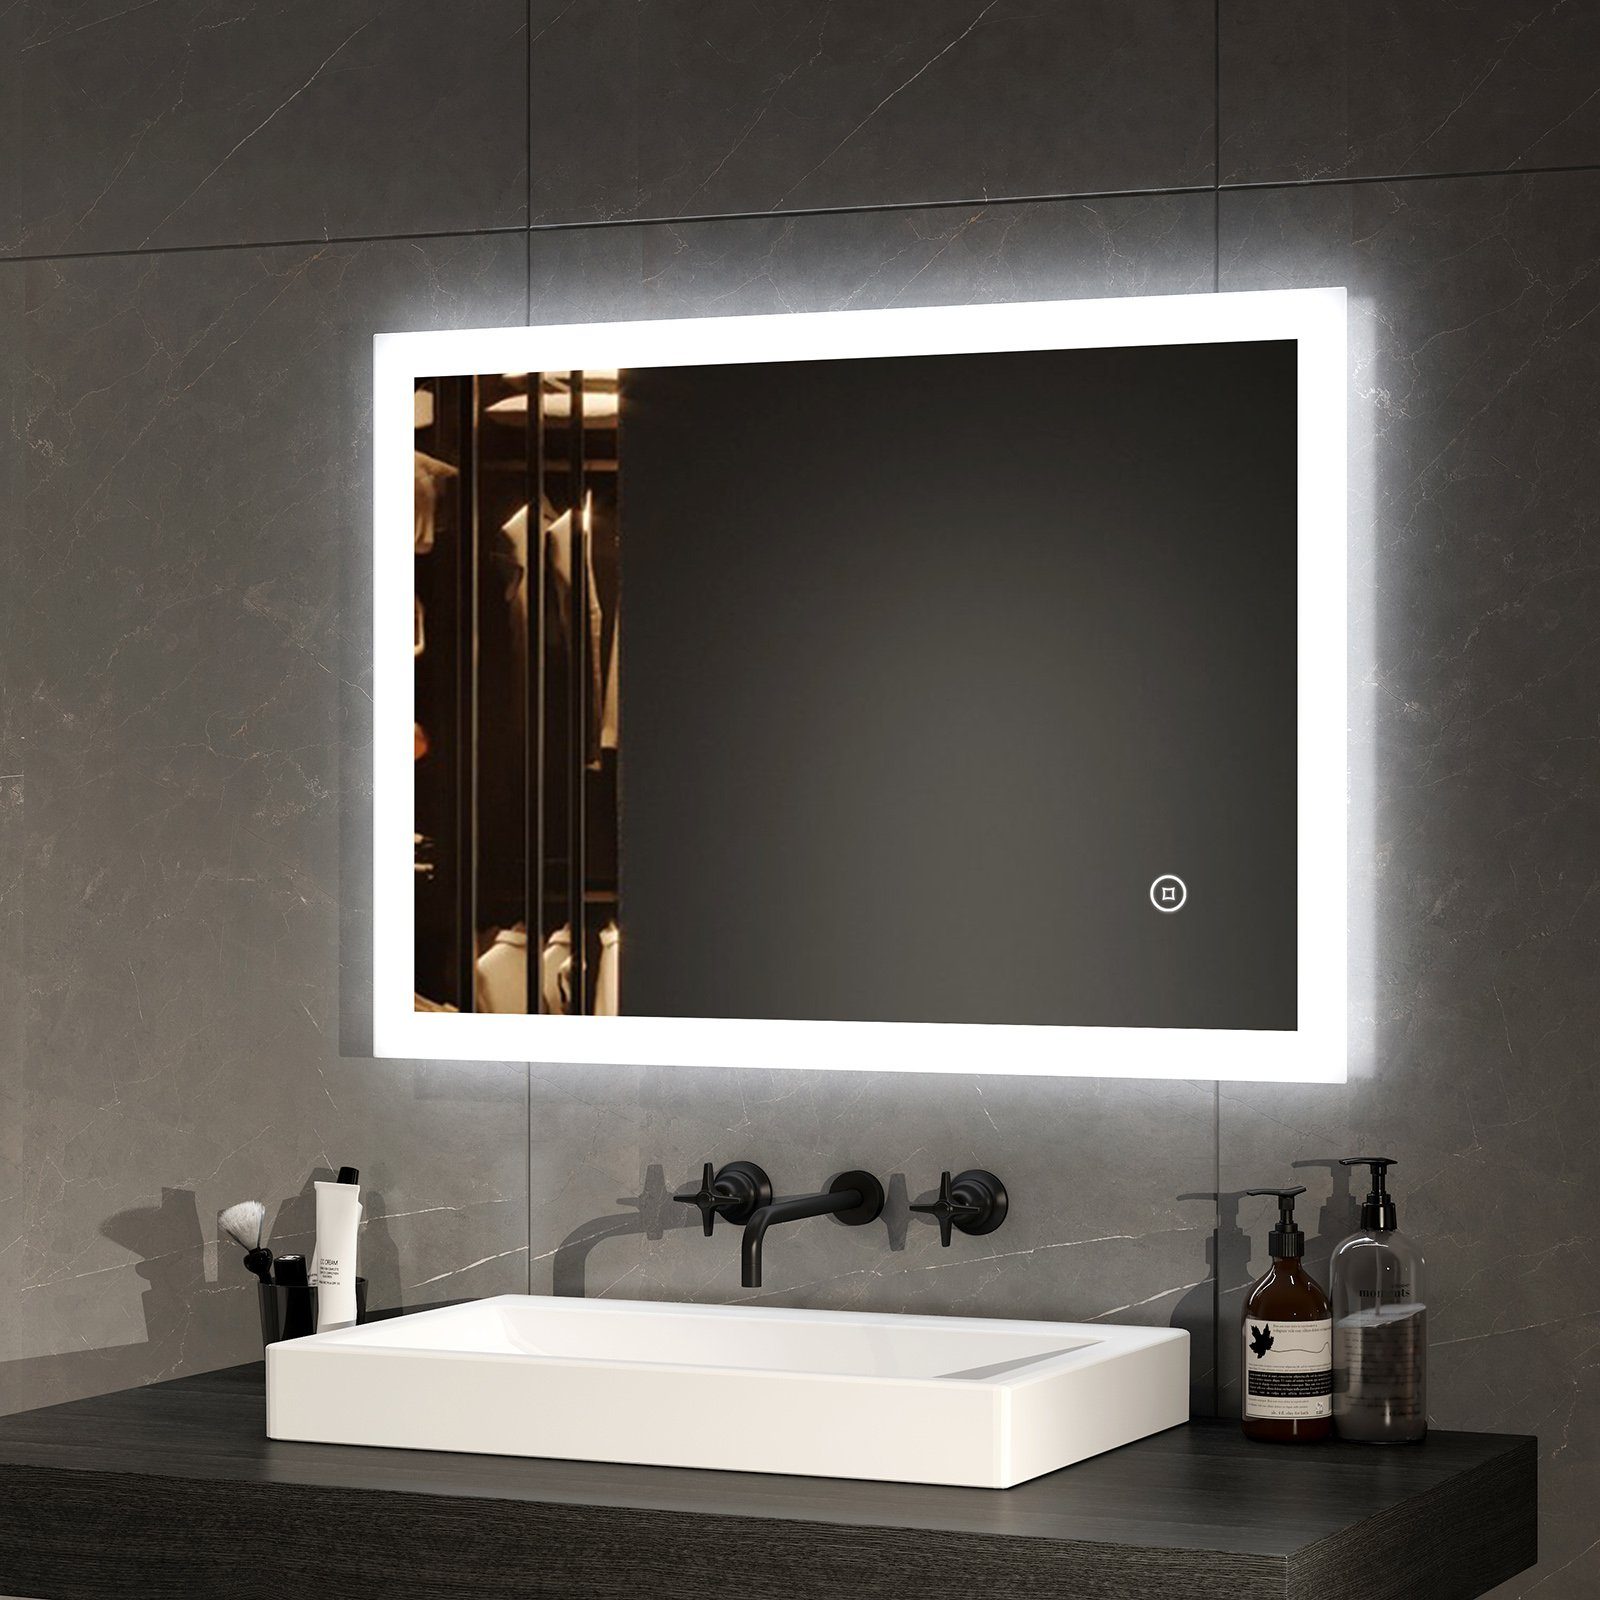 EMKE Badspiegel Badezimmerspiegel LED Badspiegel mit beleuchtung Wandspiegel (Touch-schalter, Vertikal und Horizontal möglich), kaltweiß 6500K Beleuchtung IP44